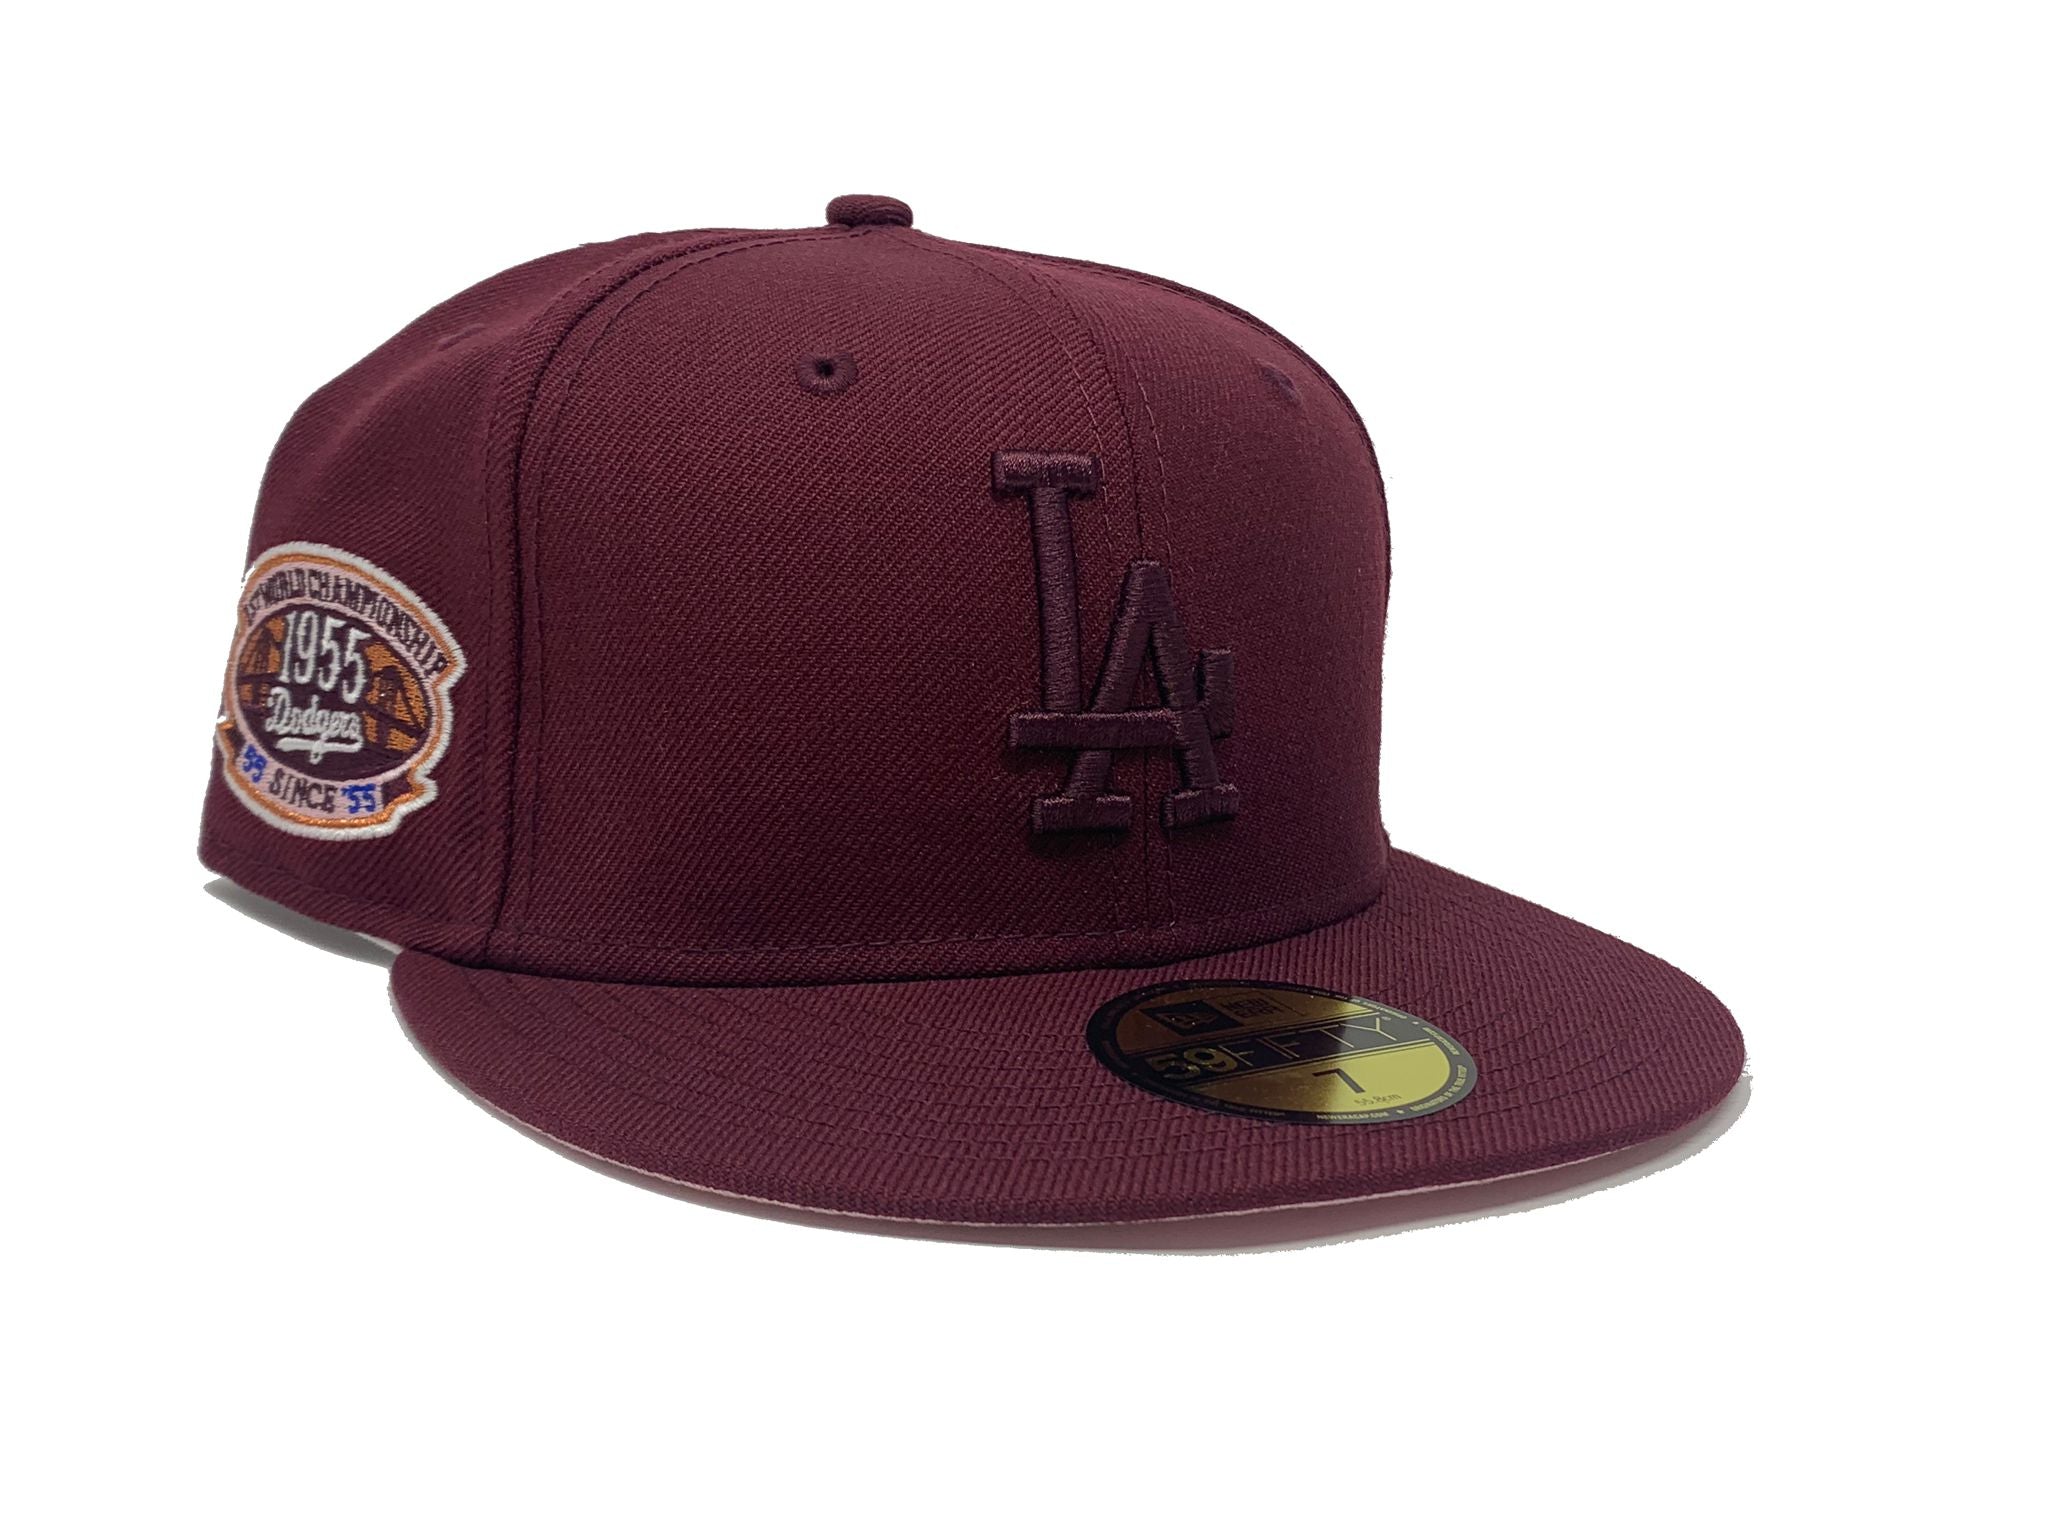 Vintage LA Dodgers hat — MY CAMPUS CLOSET